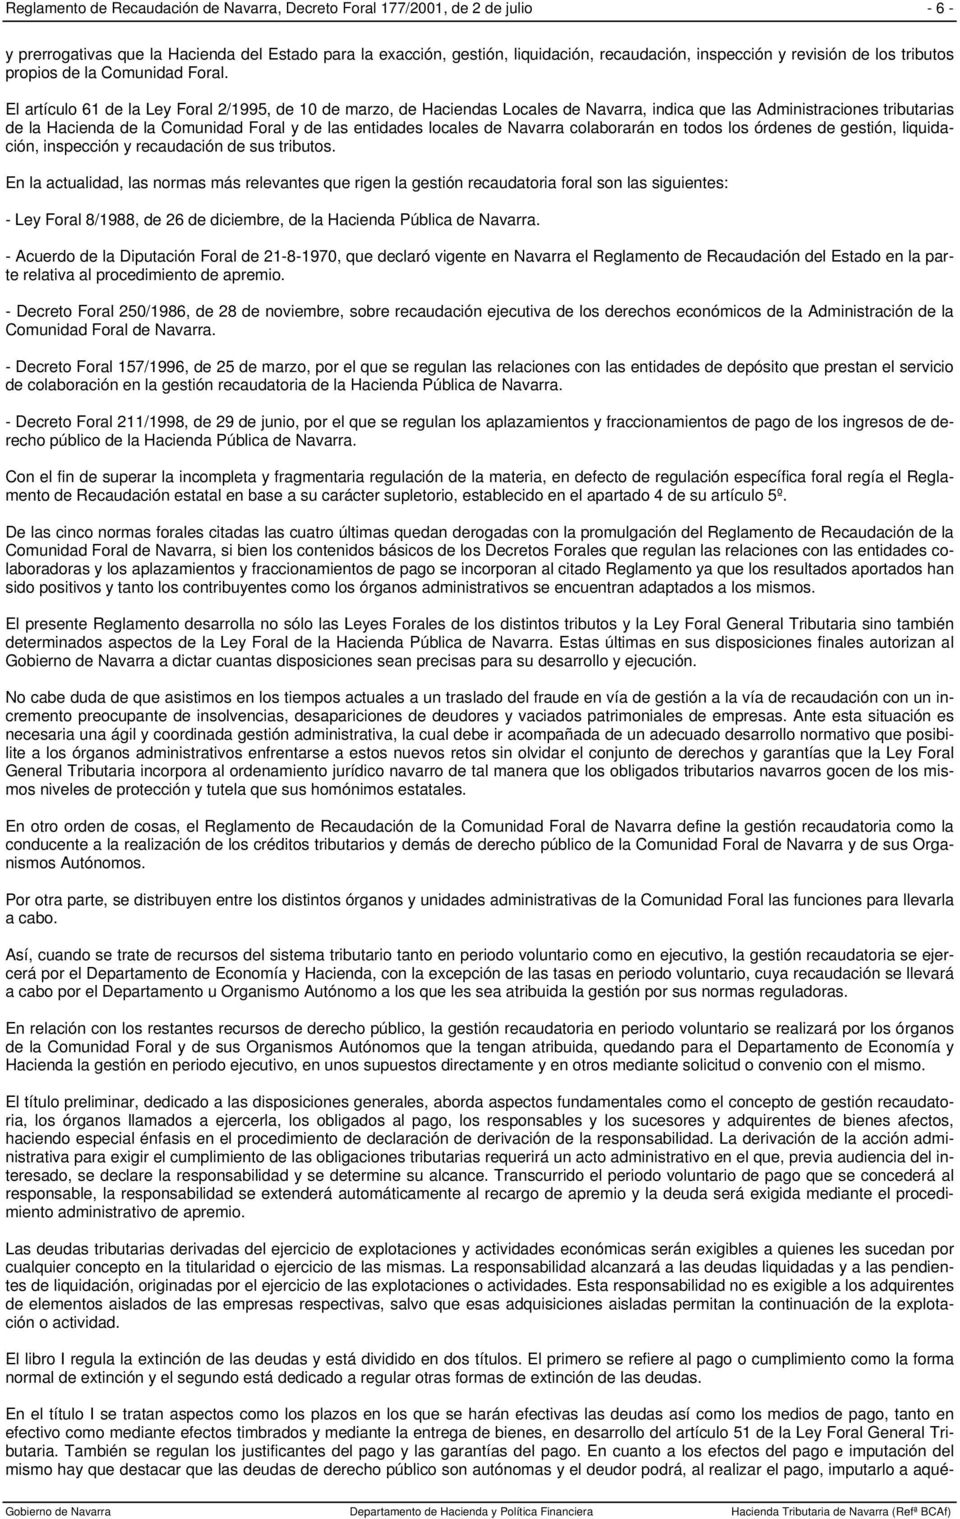 El artículo 61 de la Ley Foral 2/1995, de 10 de marzo, de Haciendas Locales de Navarra, indica que las Administraciones tributarias de la Hacienda de la Comunidad Foral y de las entidades locales de